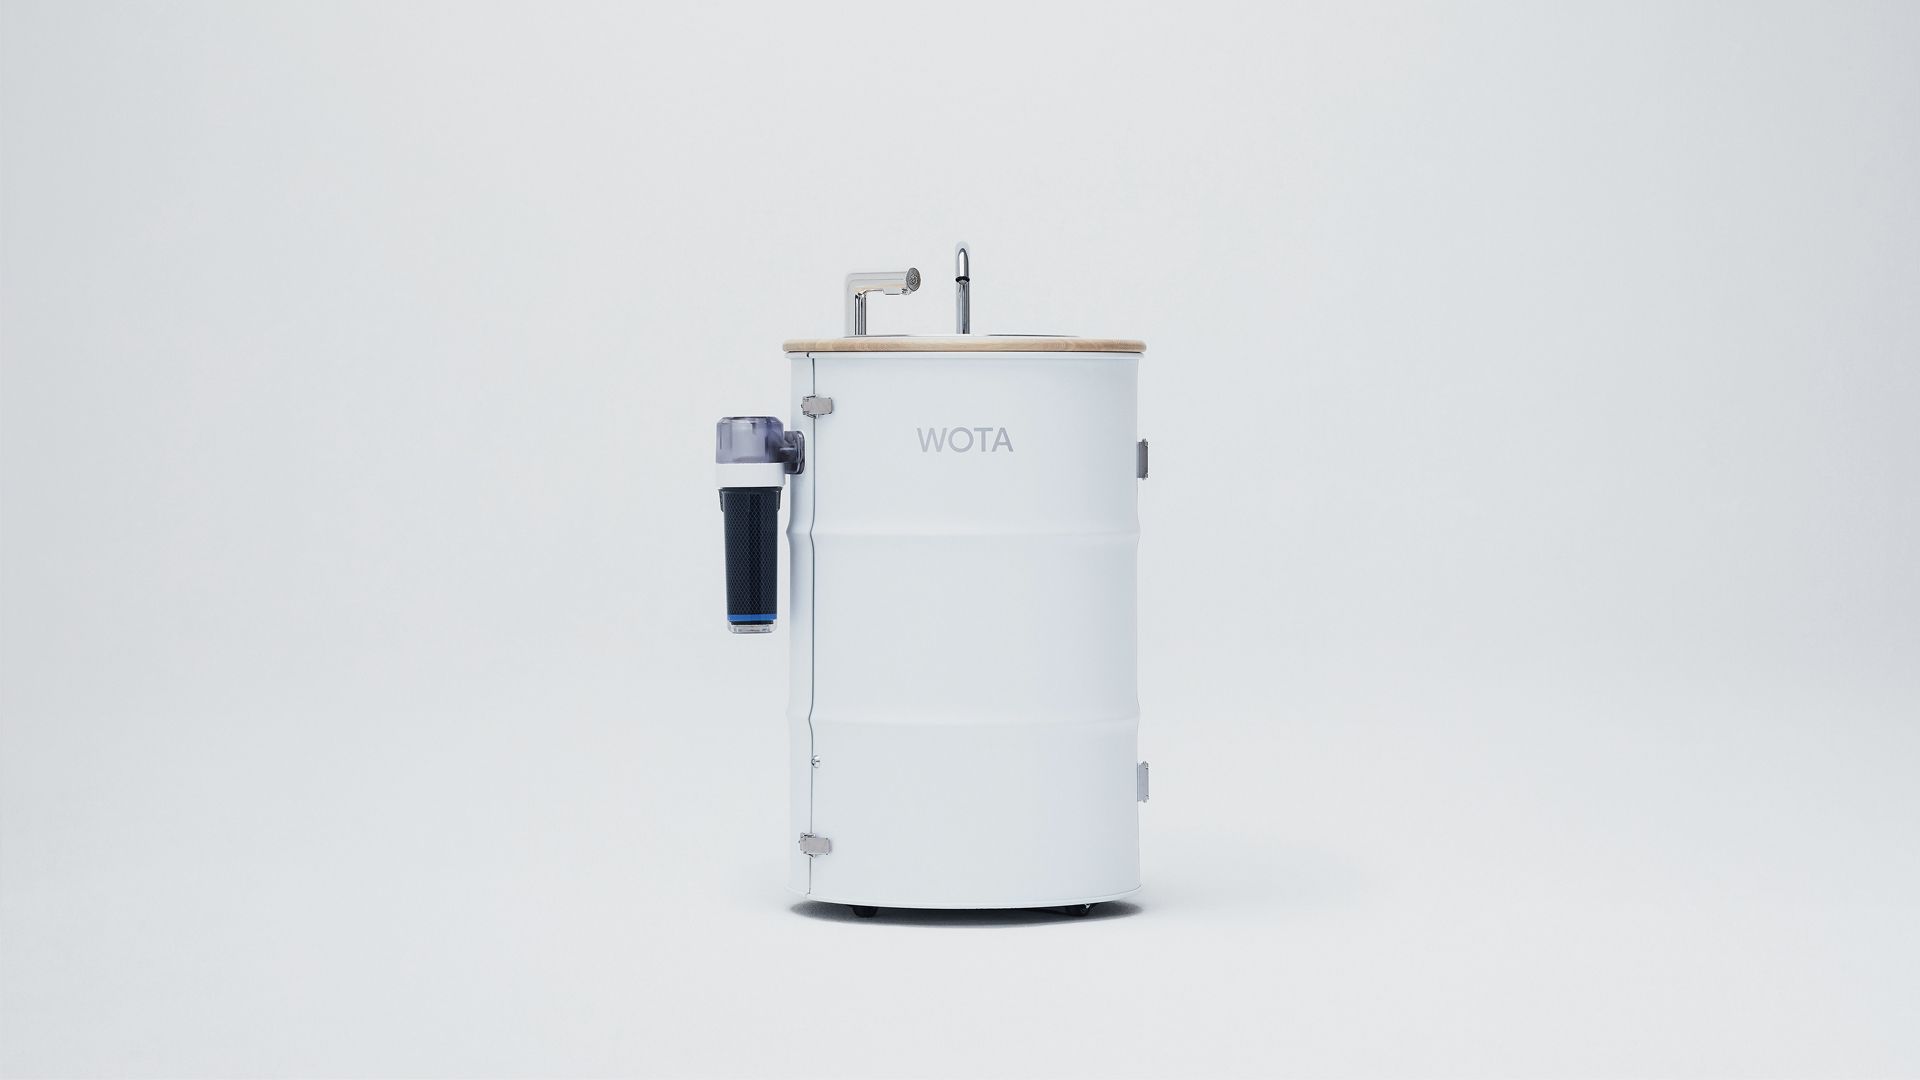 猿渡氏がデザインを手がた、WOTAの水循環型手洗いスタンド「WOSH」。JIDAデザインミュージアムセレクションで金賞を受賞した